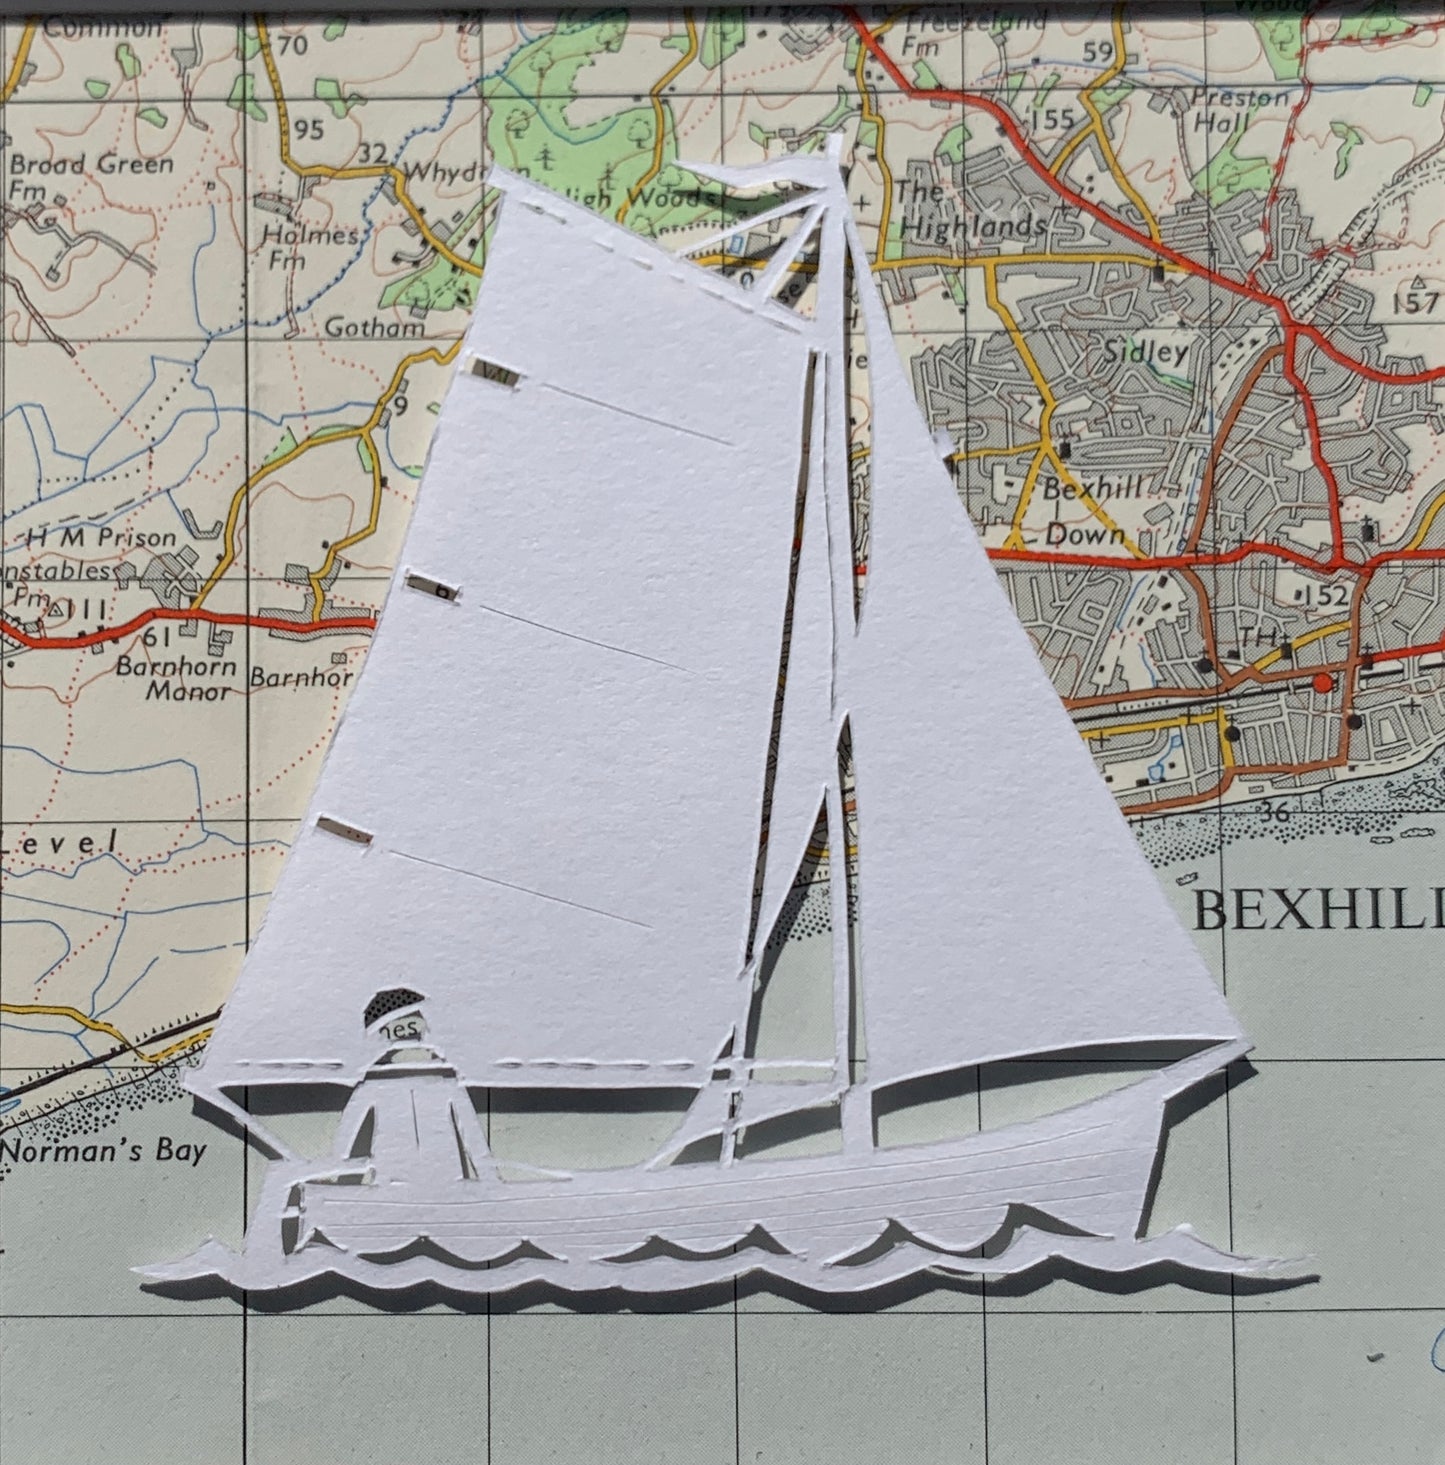 Sailing at Bexhill